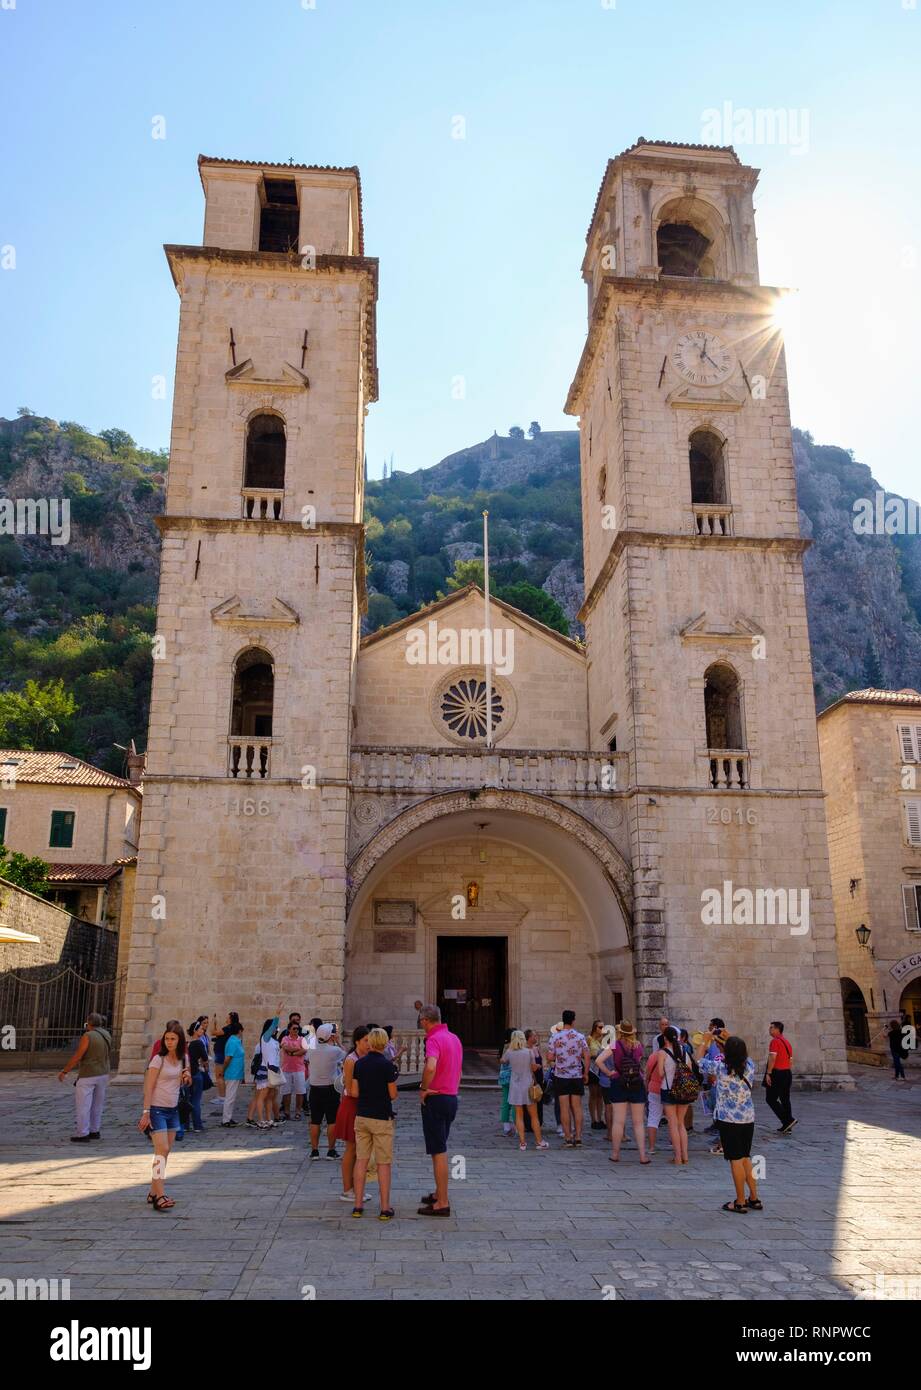 Groupe touristique en face de la cathédrale Saint-tryphon, vieille ville de Kotor, Monténégro Banque D'Images